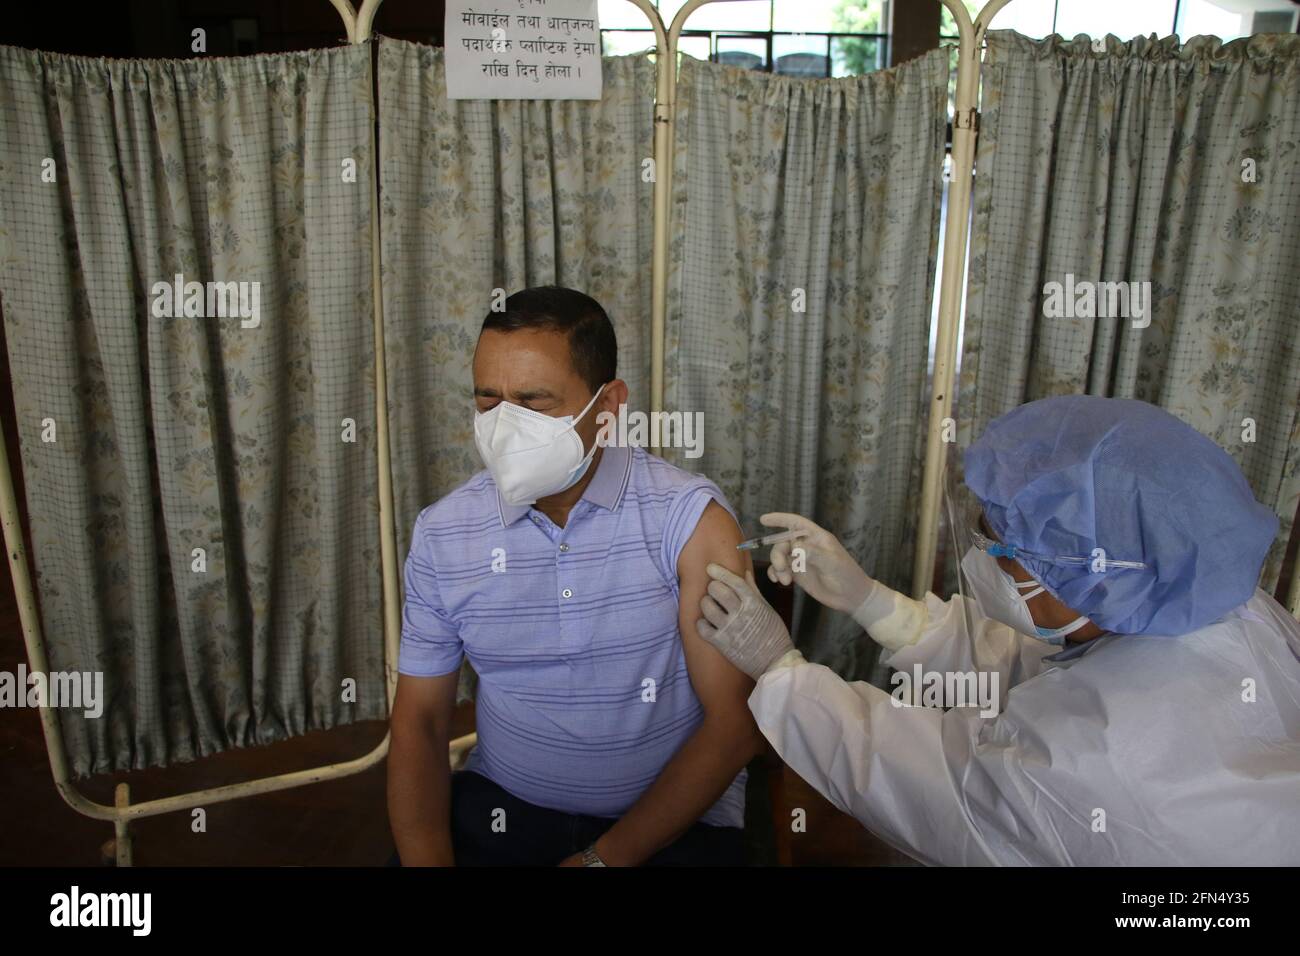 Kathmandu, NE, Nepal. Mai 2021. Am 14. Mai 2021 impft ein Gesundheitsmitarbeiter im Parlamentsgebäude in Kathmandu, Nepal, Menschen mit Covishield-Impfstoffen. Quelle: Aryan Dhimal/ZUMA Wire/Alamy Live News Stockfoto